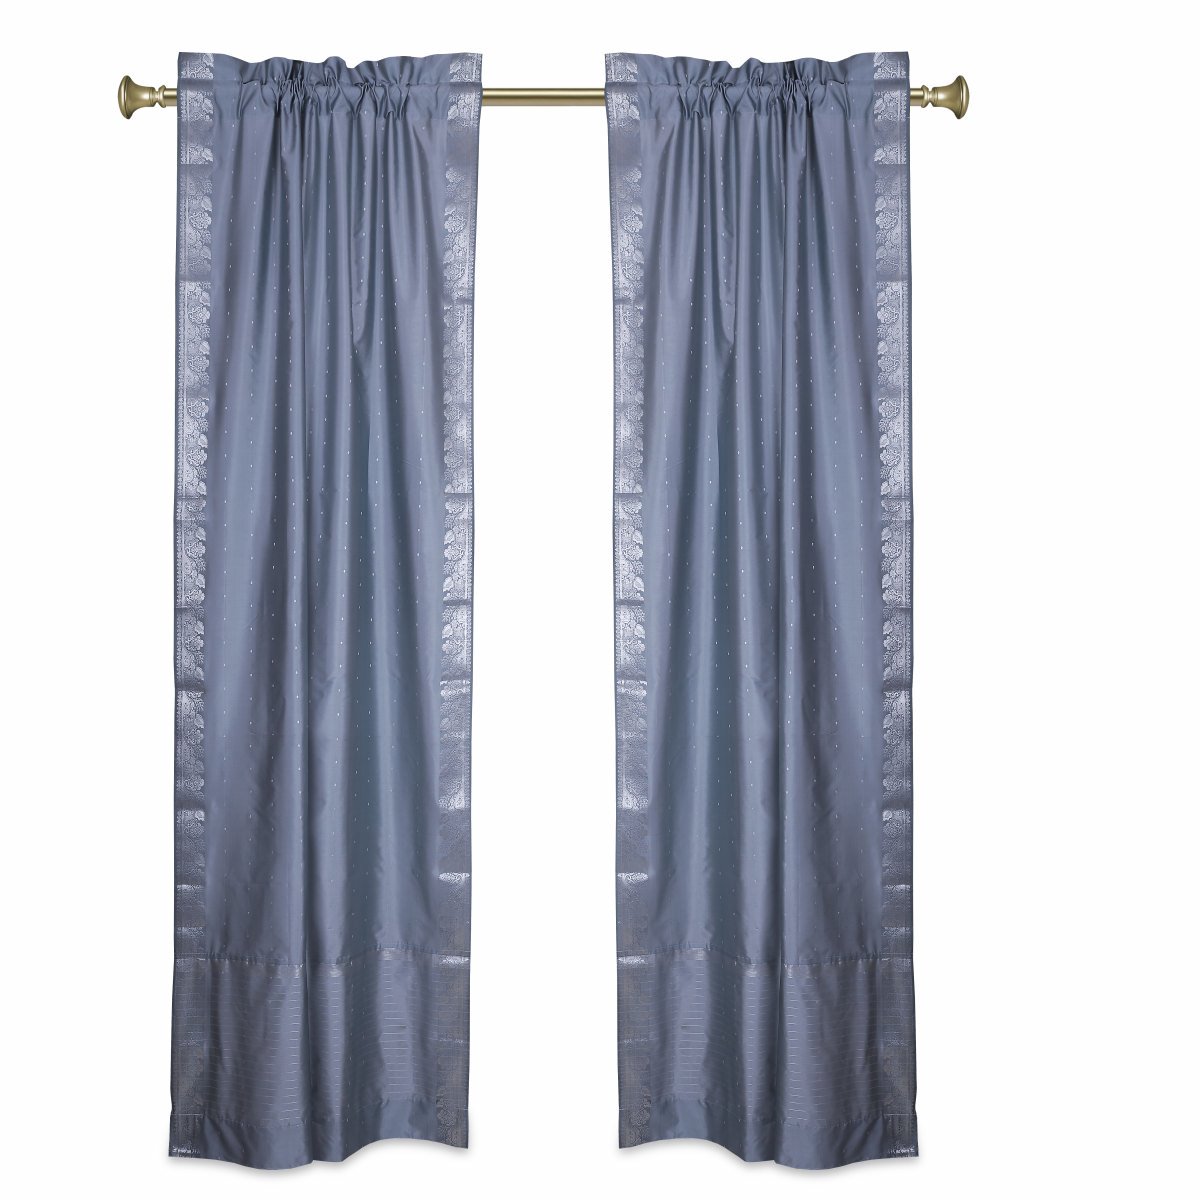 Indian Selections Gray Rod Pocket  Sheer Sari Curtains w/ Silver Border-Pair